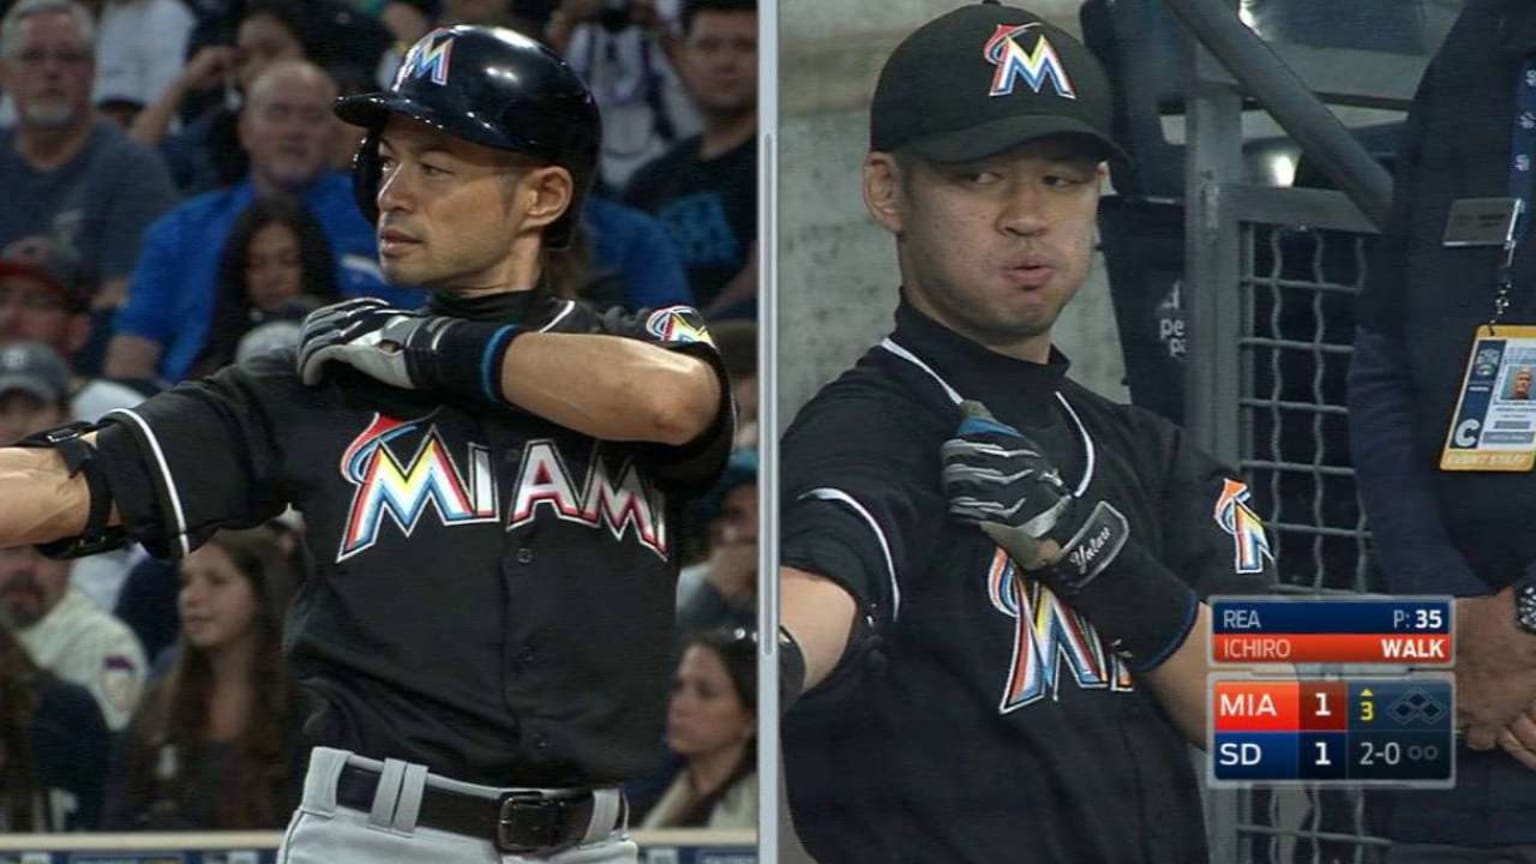 Charming video saga shows baseball player Ichiro playing his own